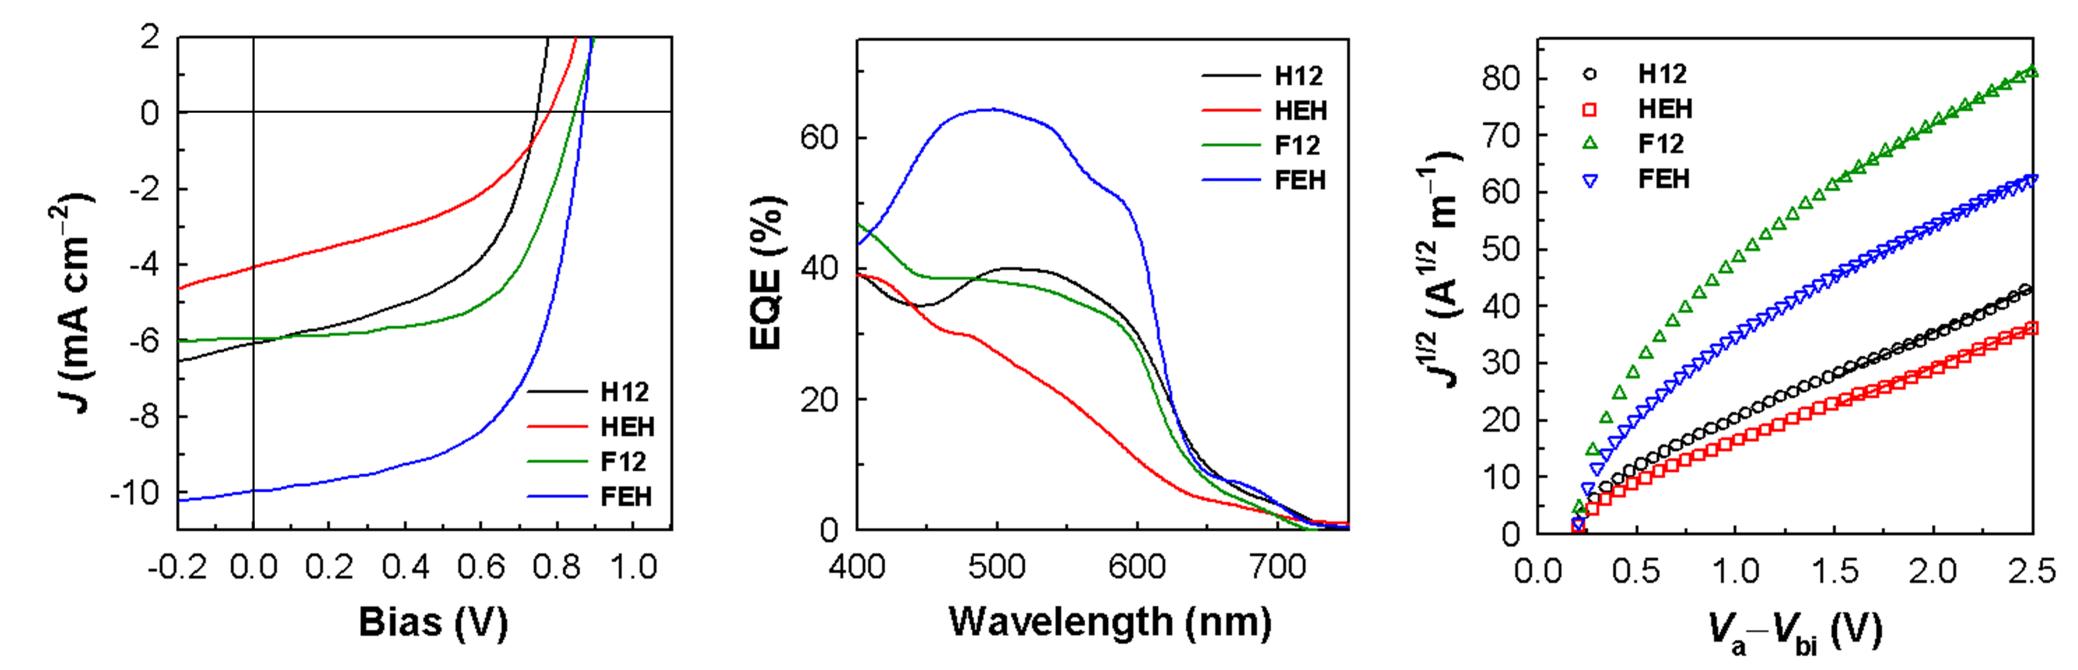 고분자/PC71BM BHJ 태양전지의 J-V 곡선, EQE 스펙트럼과 고분자/PC71BM hole-only 소자의 dark J-V 곡선.